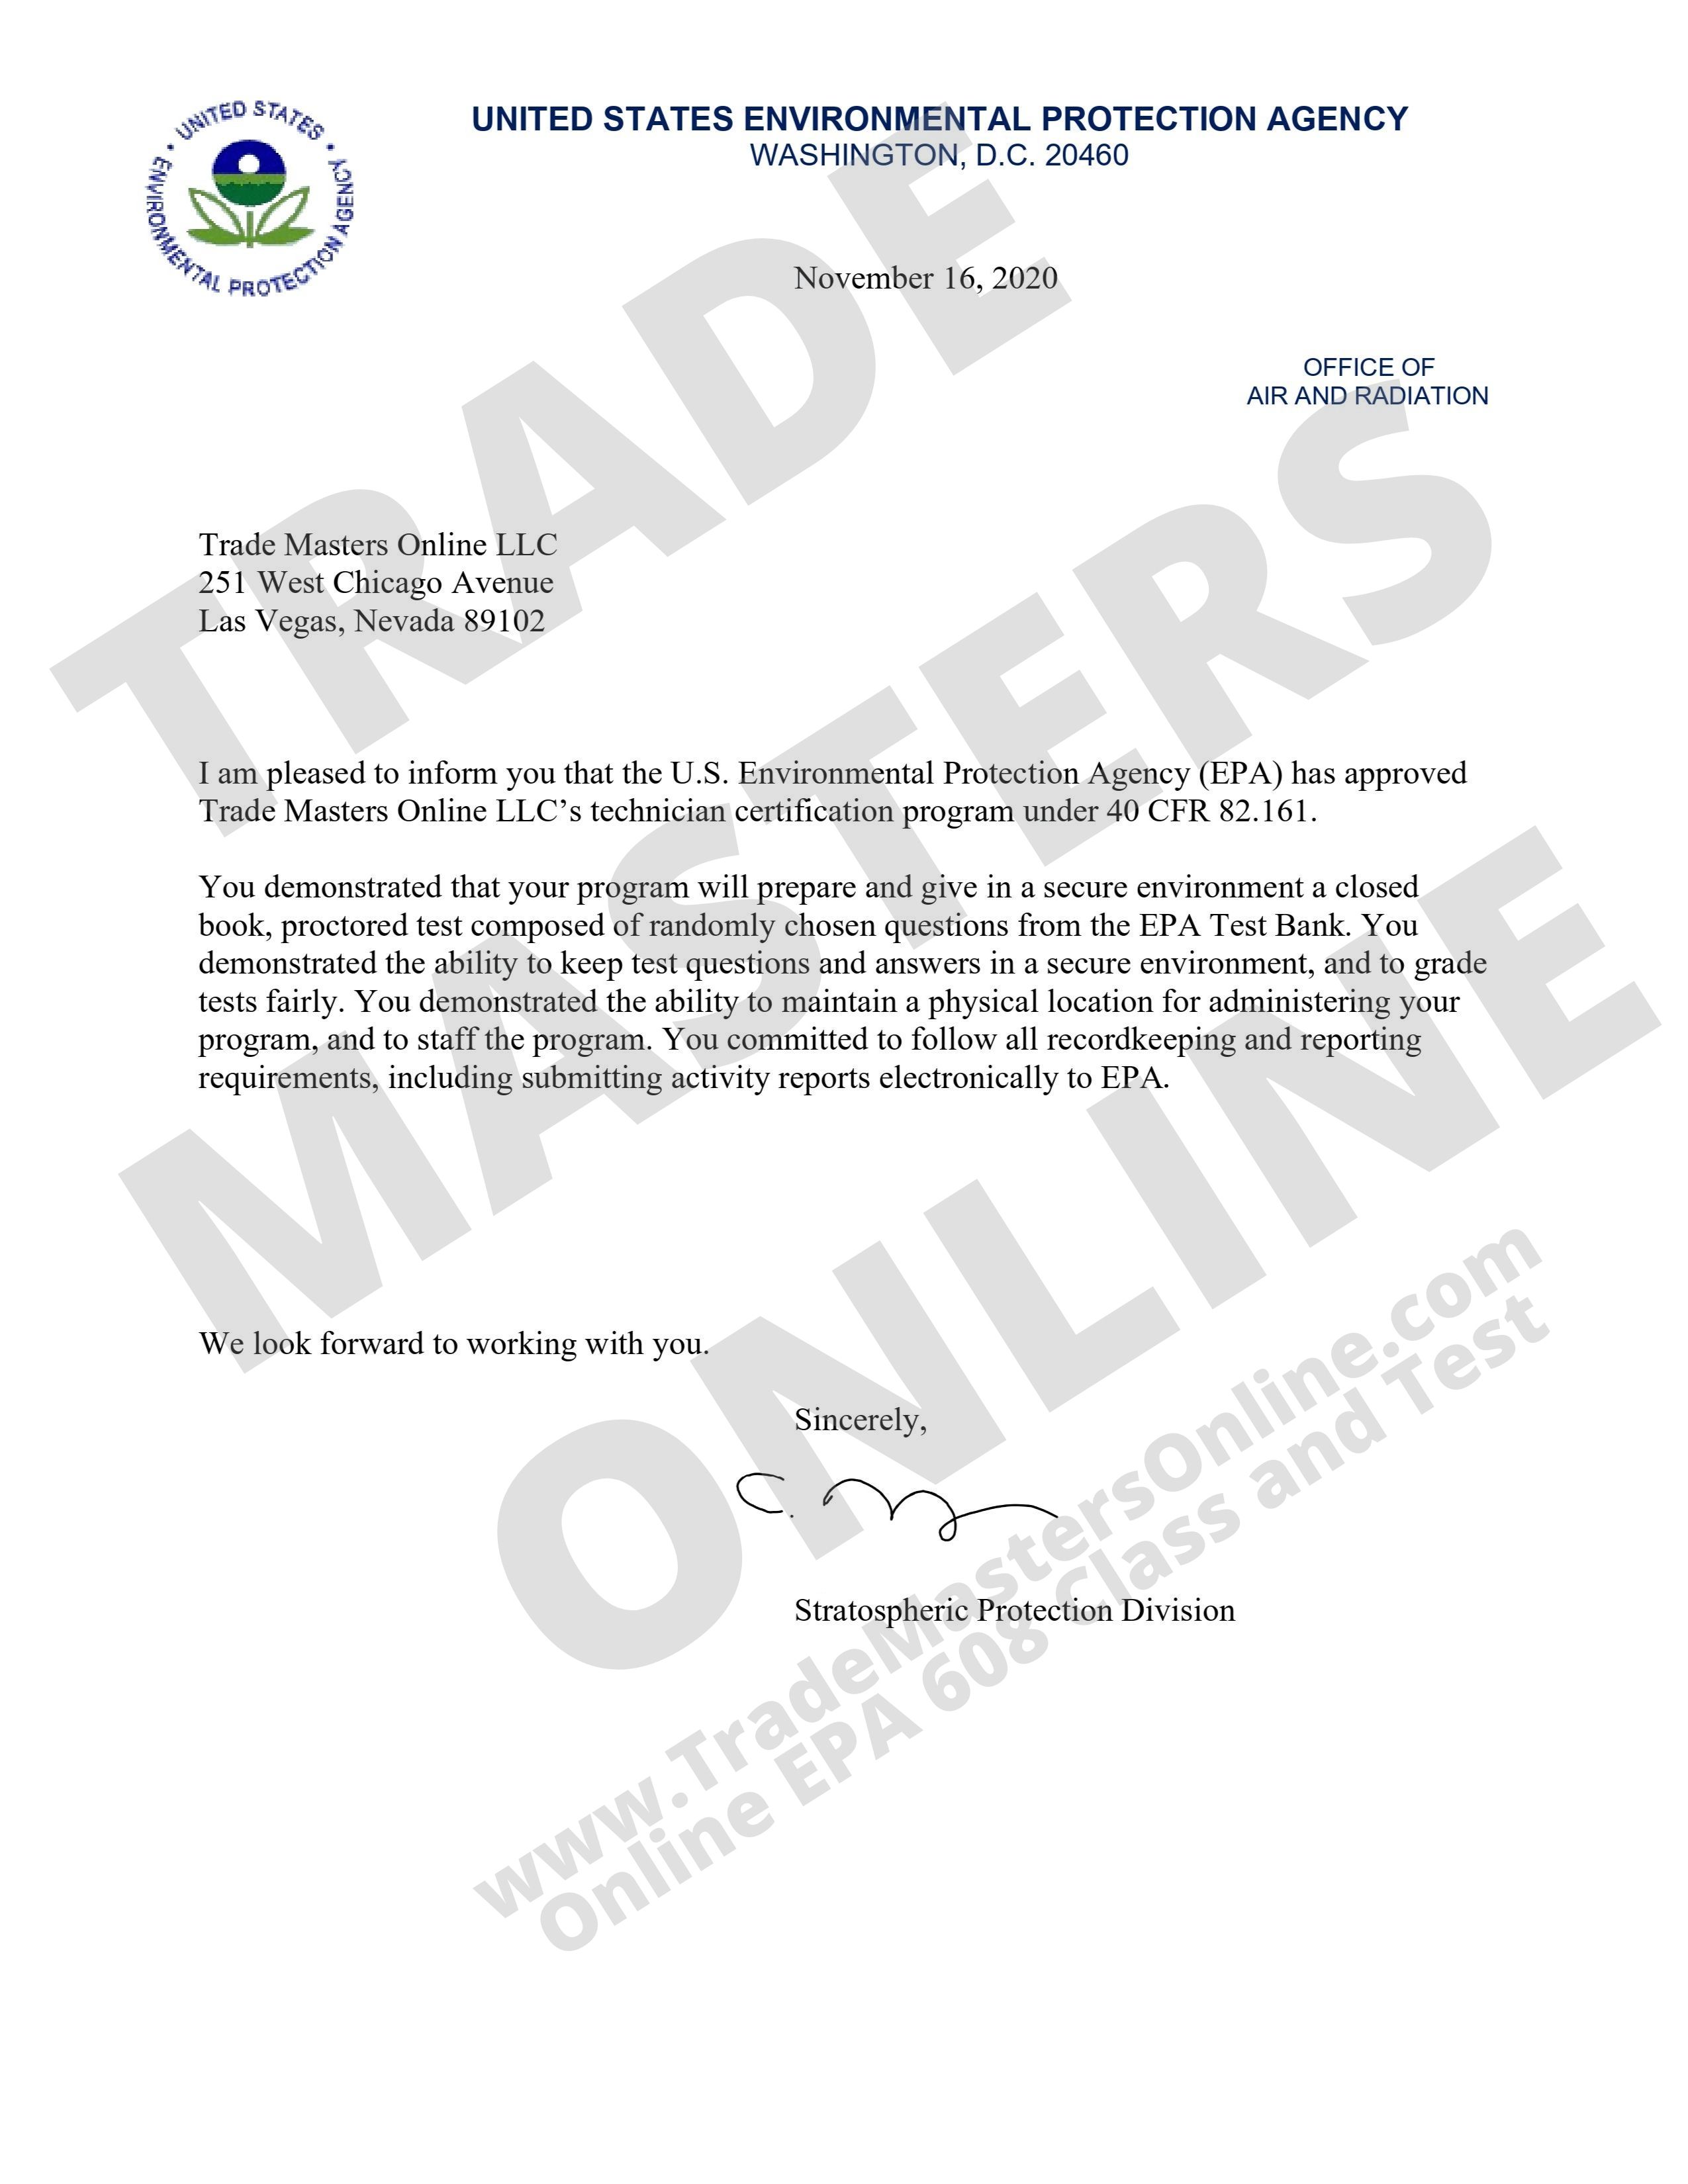 EPA 608 Certification Program Approval Letter